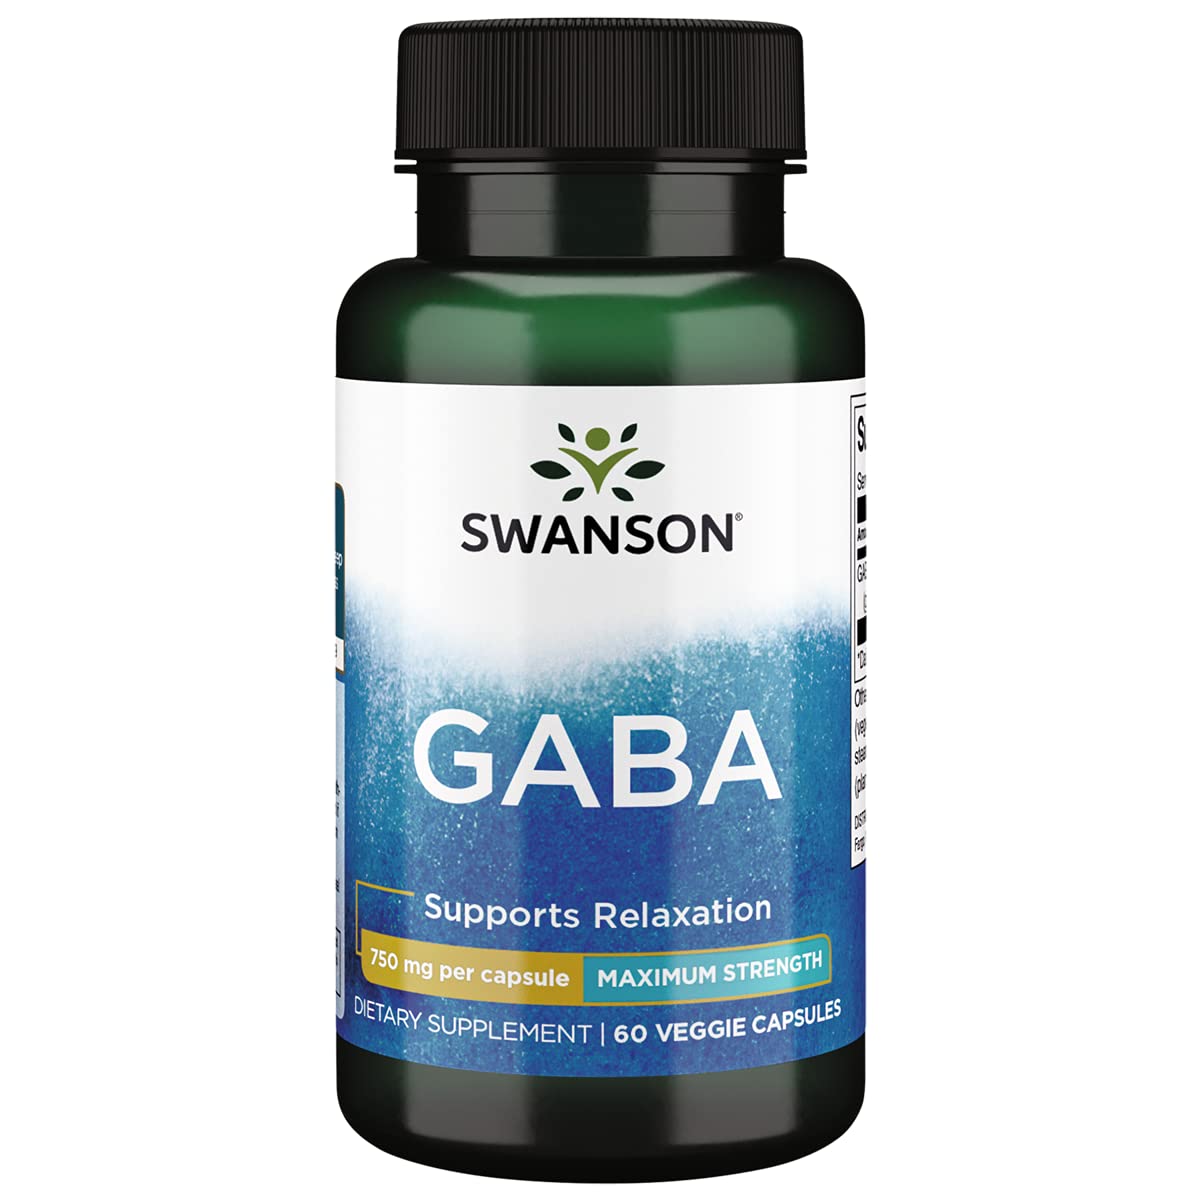 Swanson Gaba Maximum Strength, 750 mg, 60 Veggie Capsules